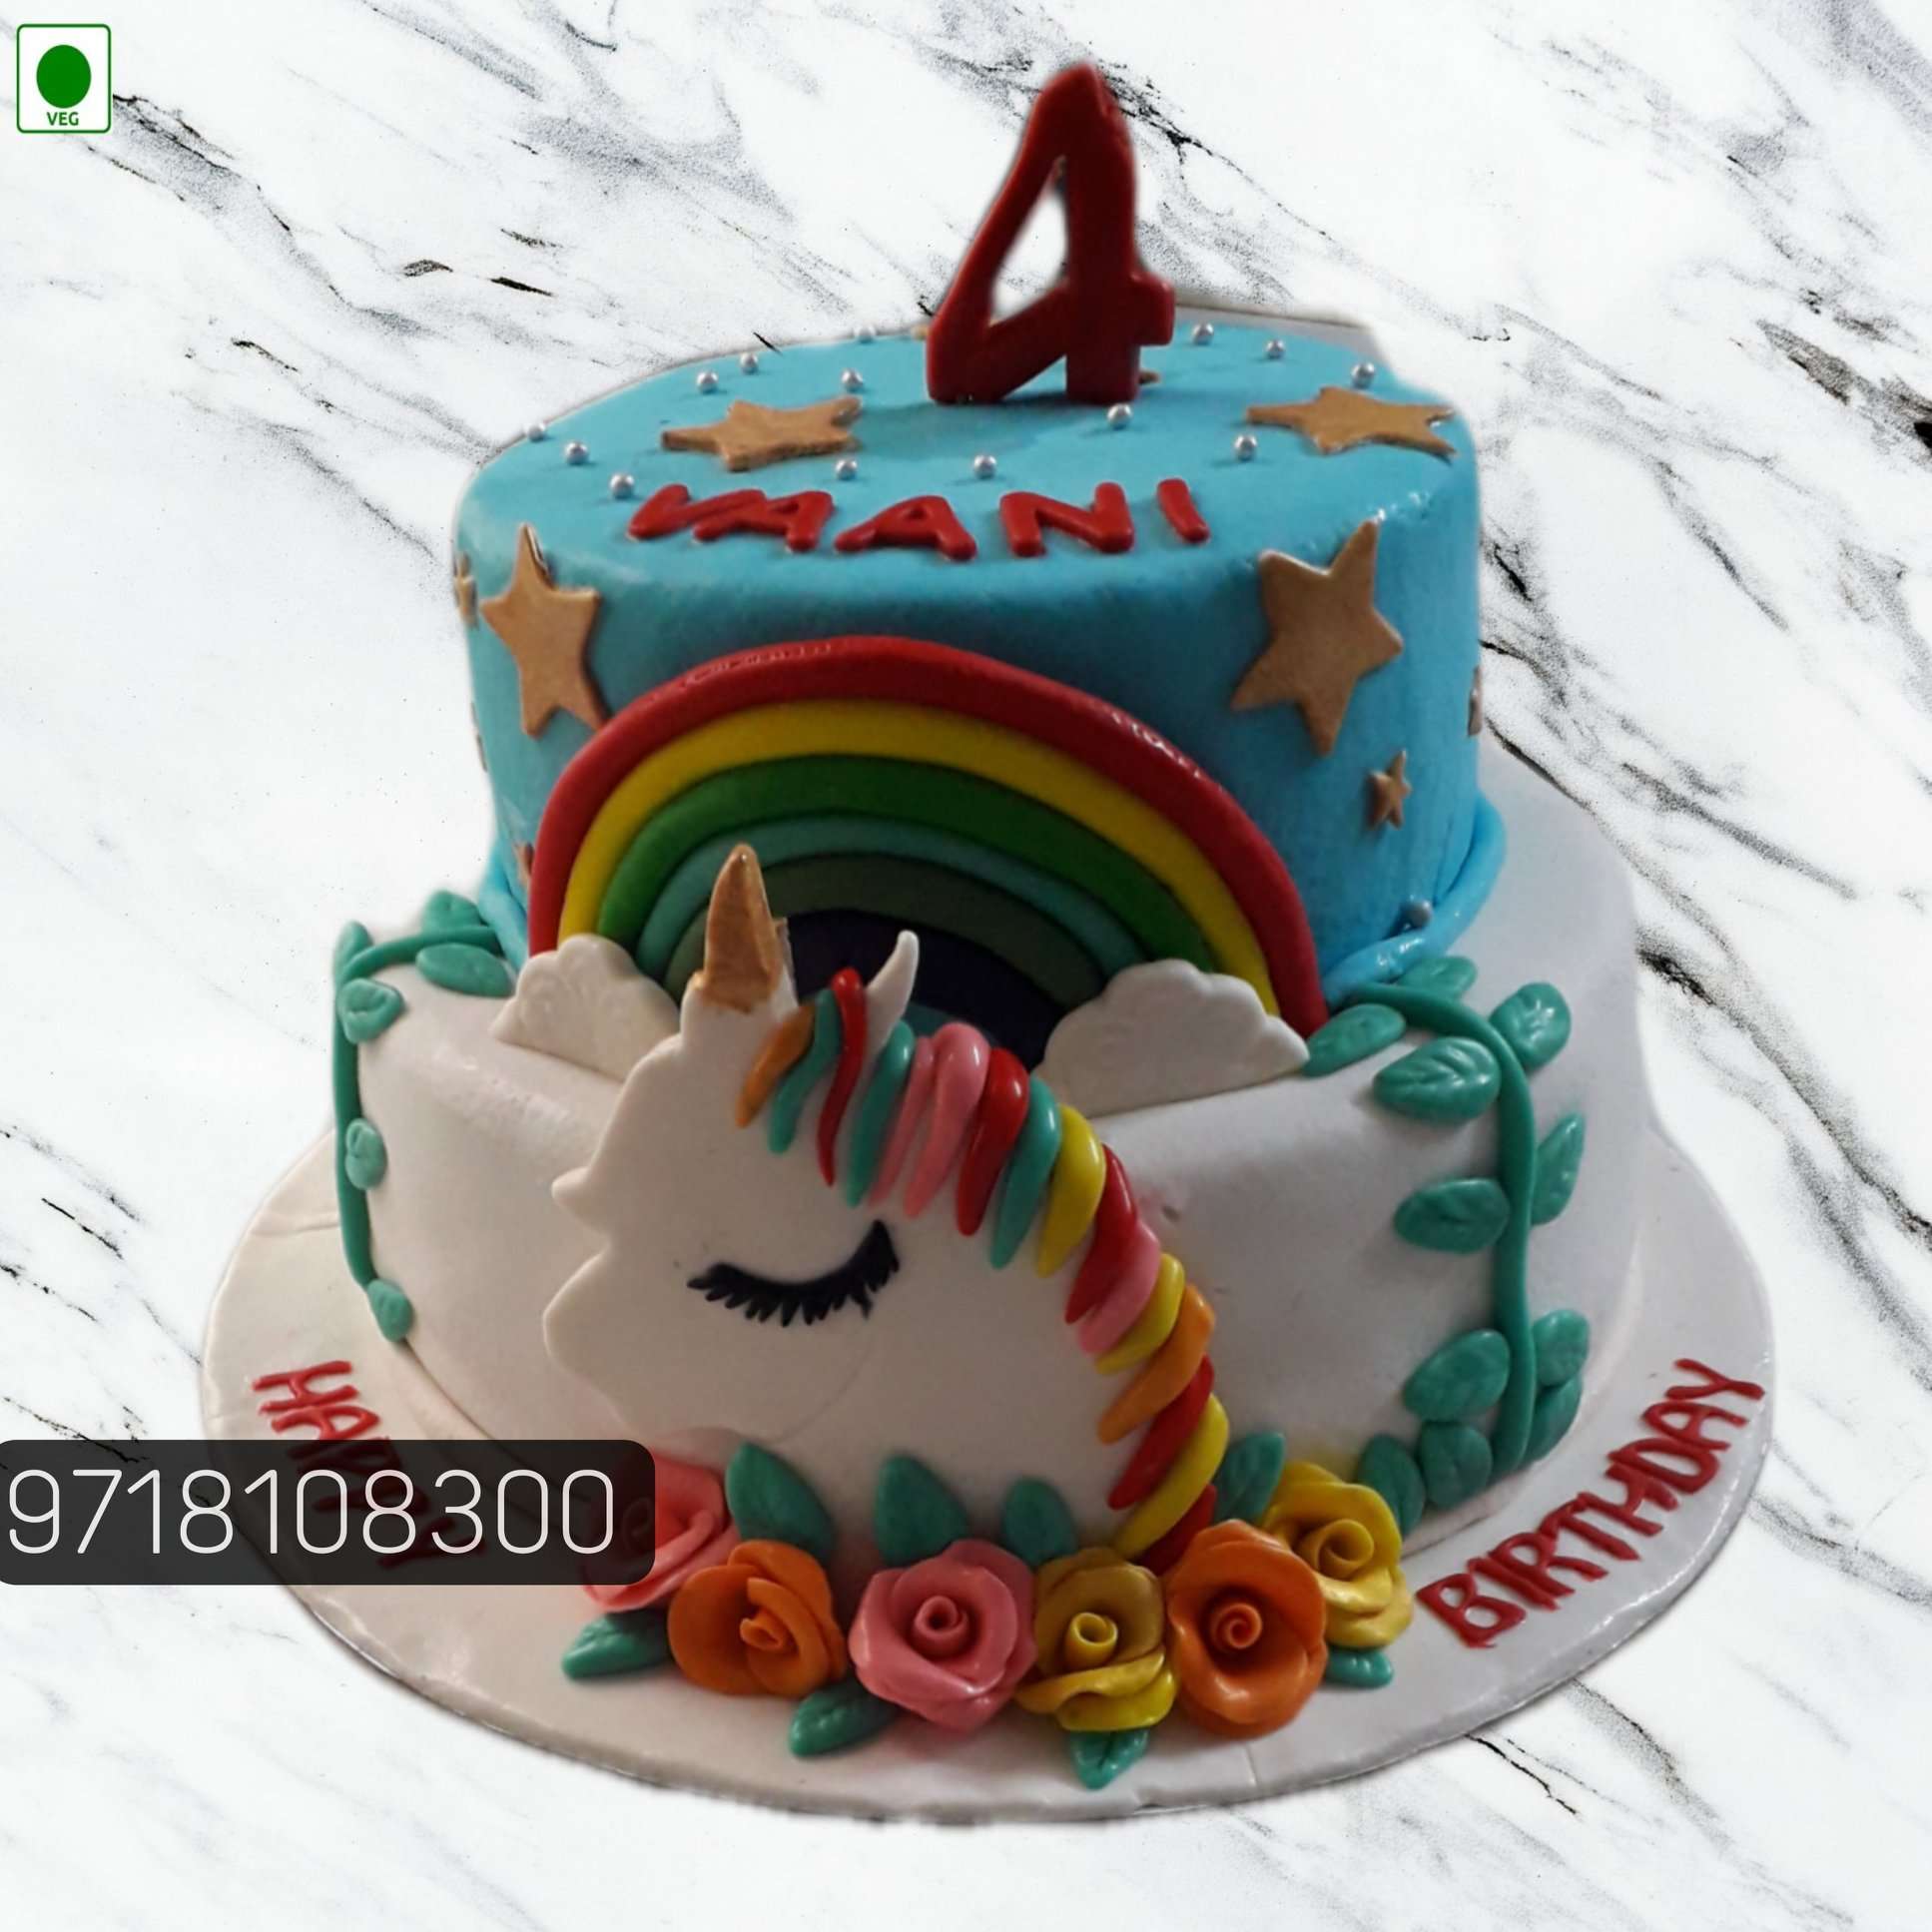 Double Heart Anniversary Cake | anniversary cake noida | Bakehoney